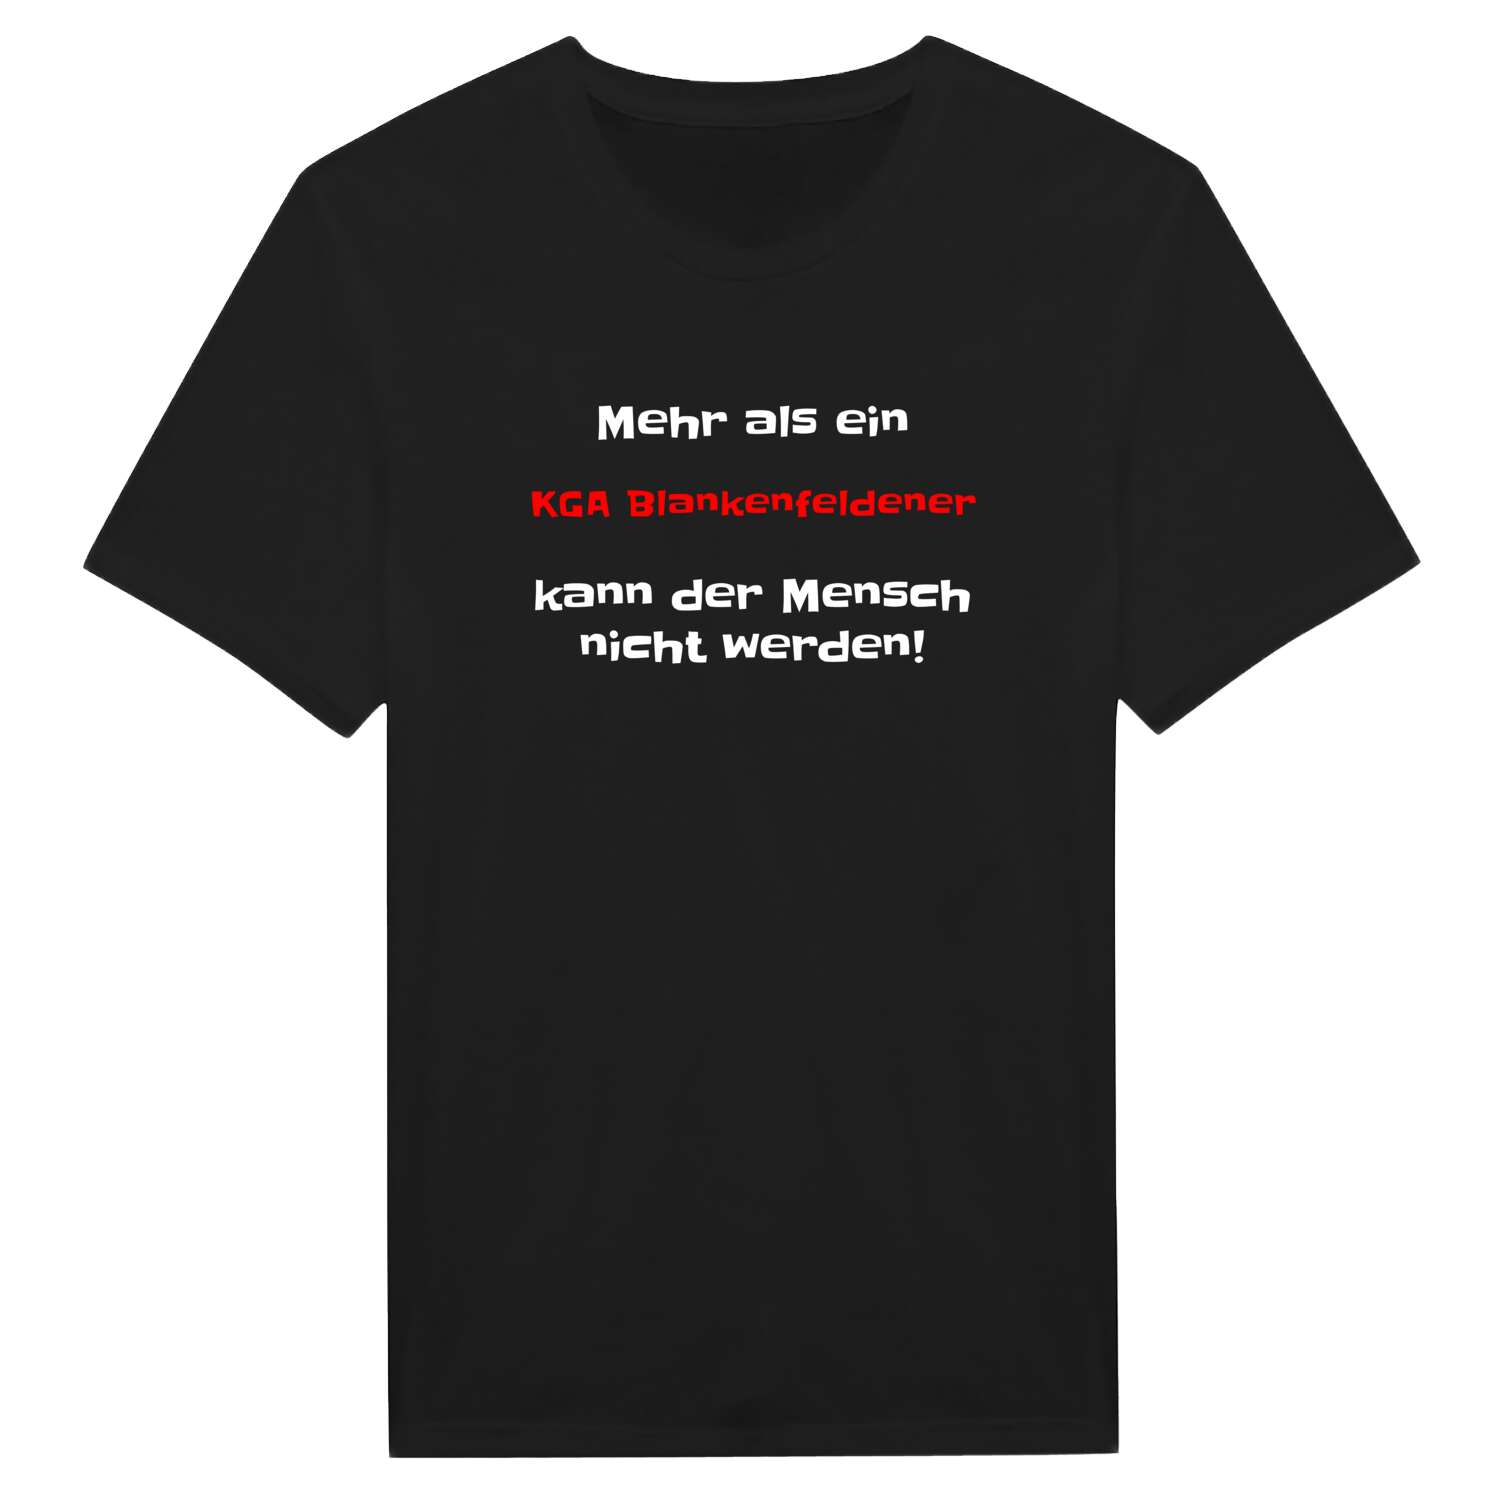 KGA Blankenfelde T-Shirt »Mehr als ein«